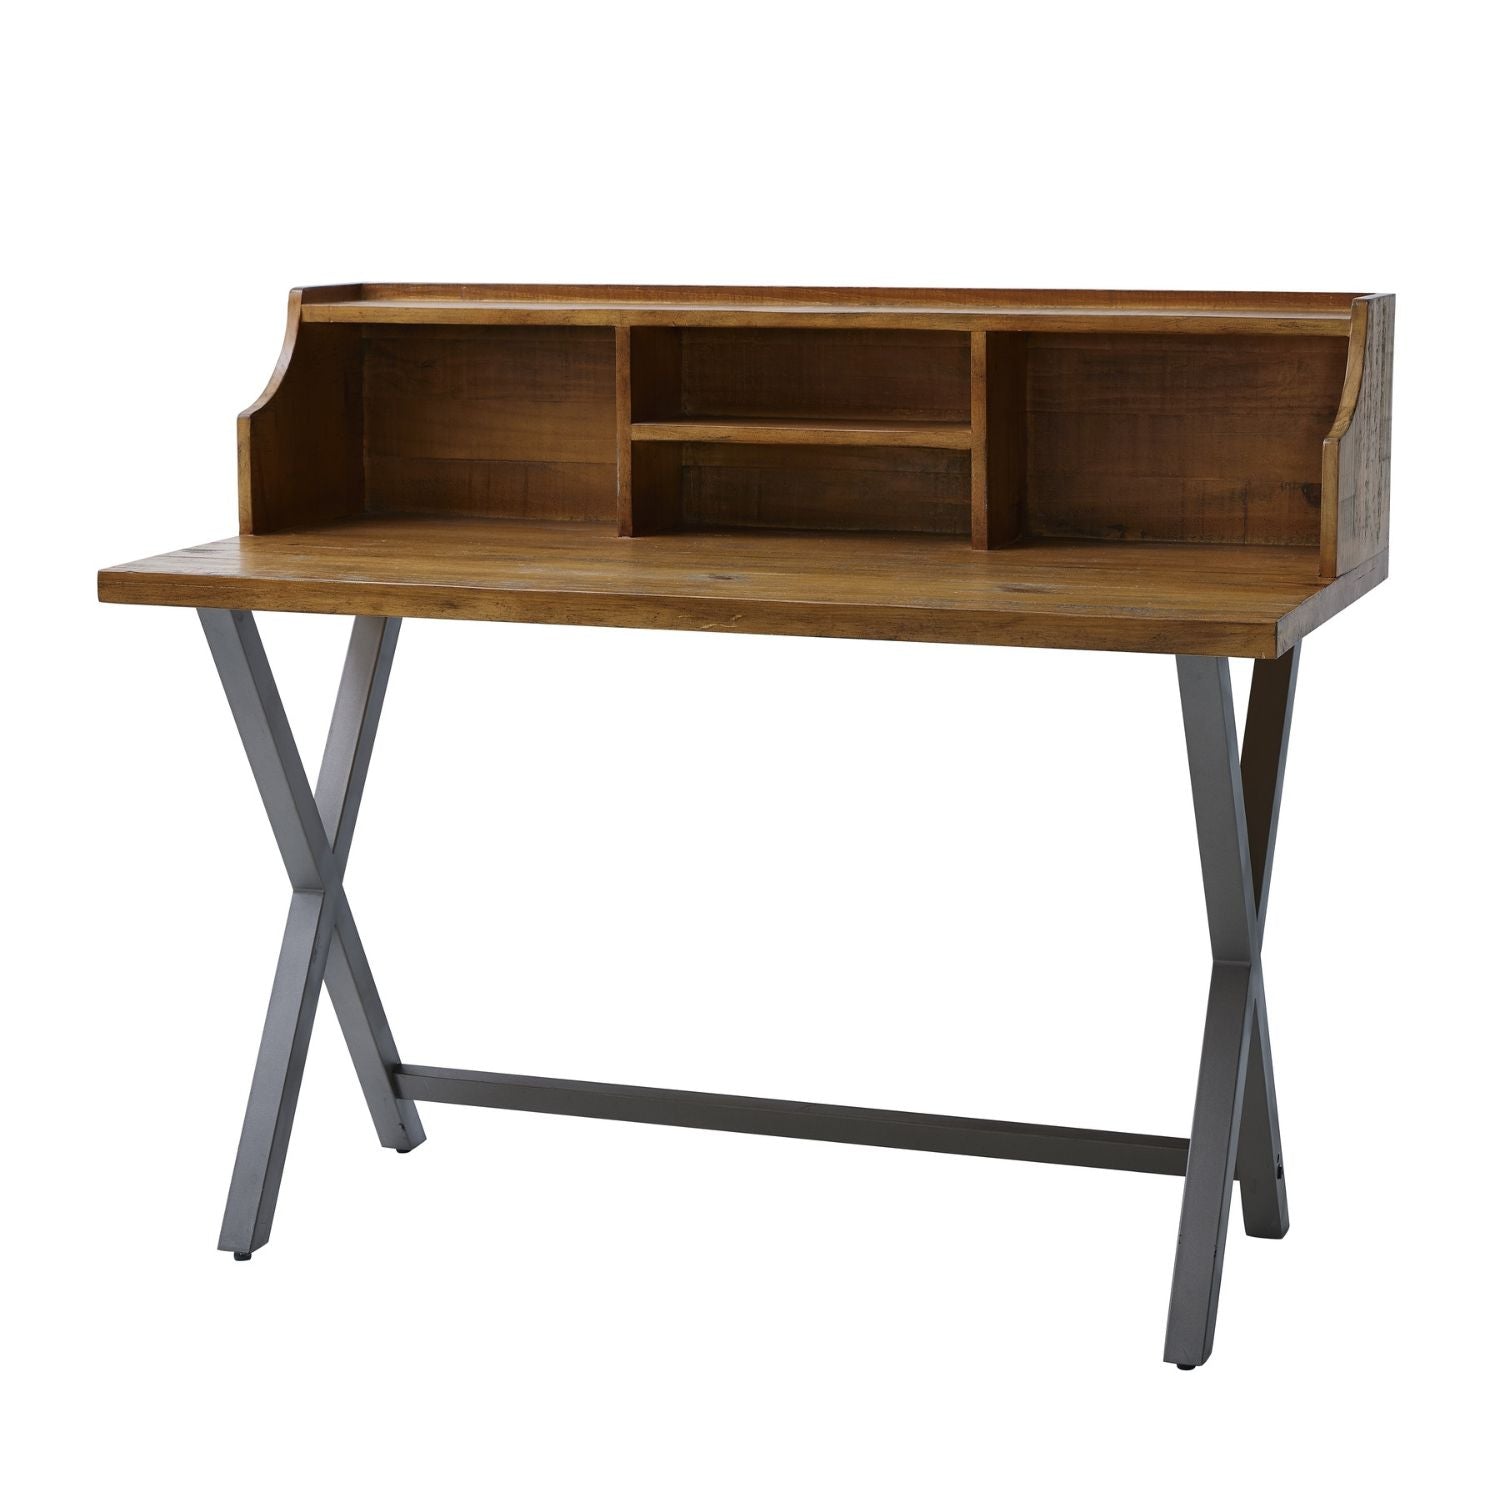 Wooden desk with grey metal legs